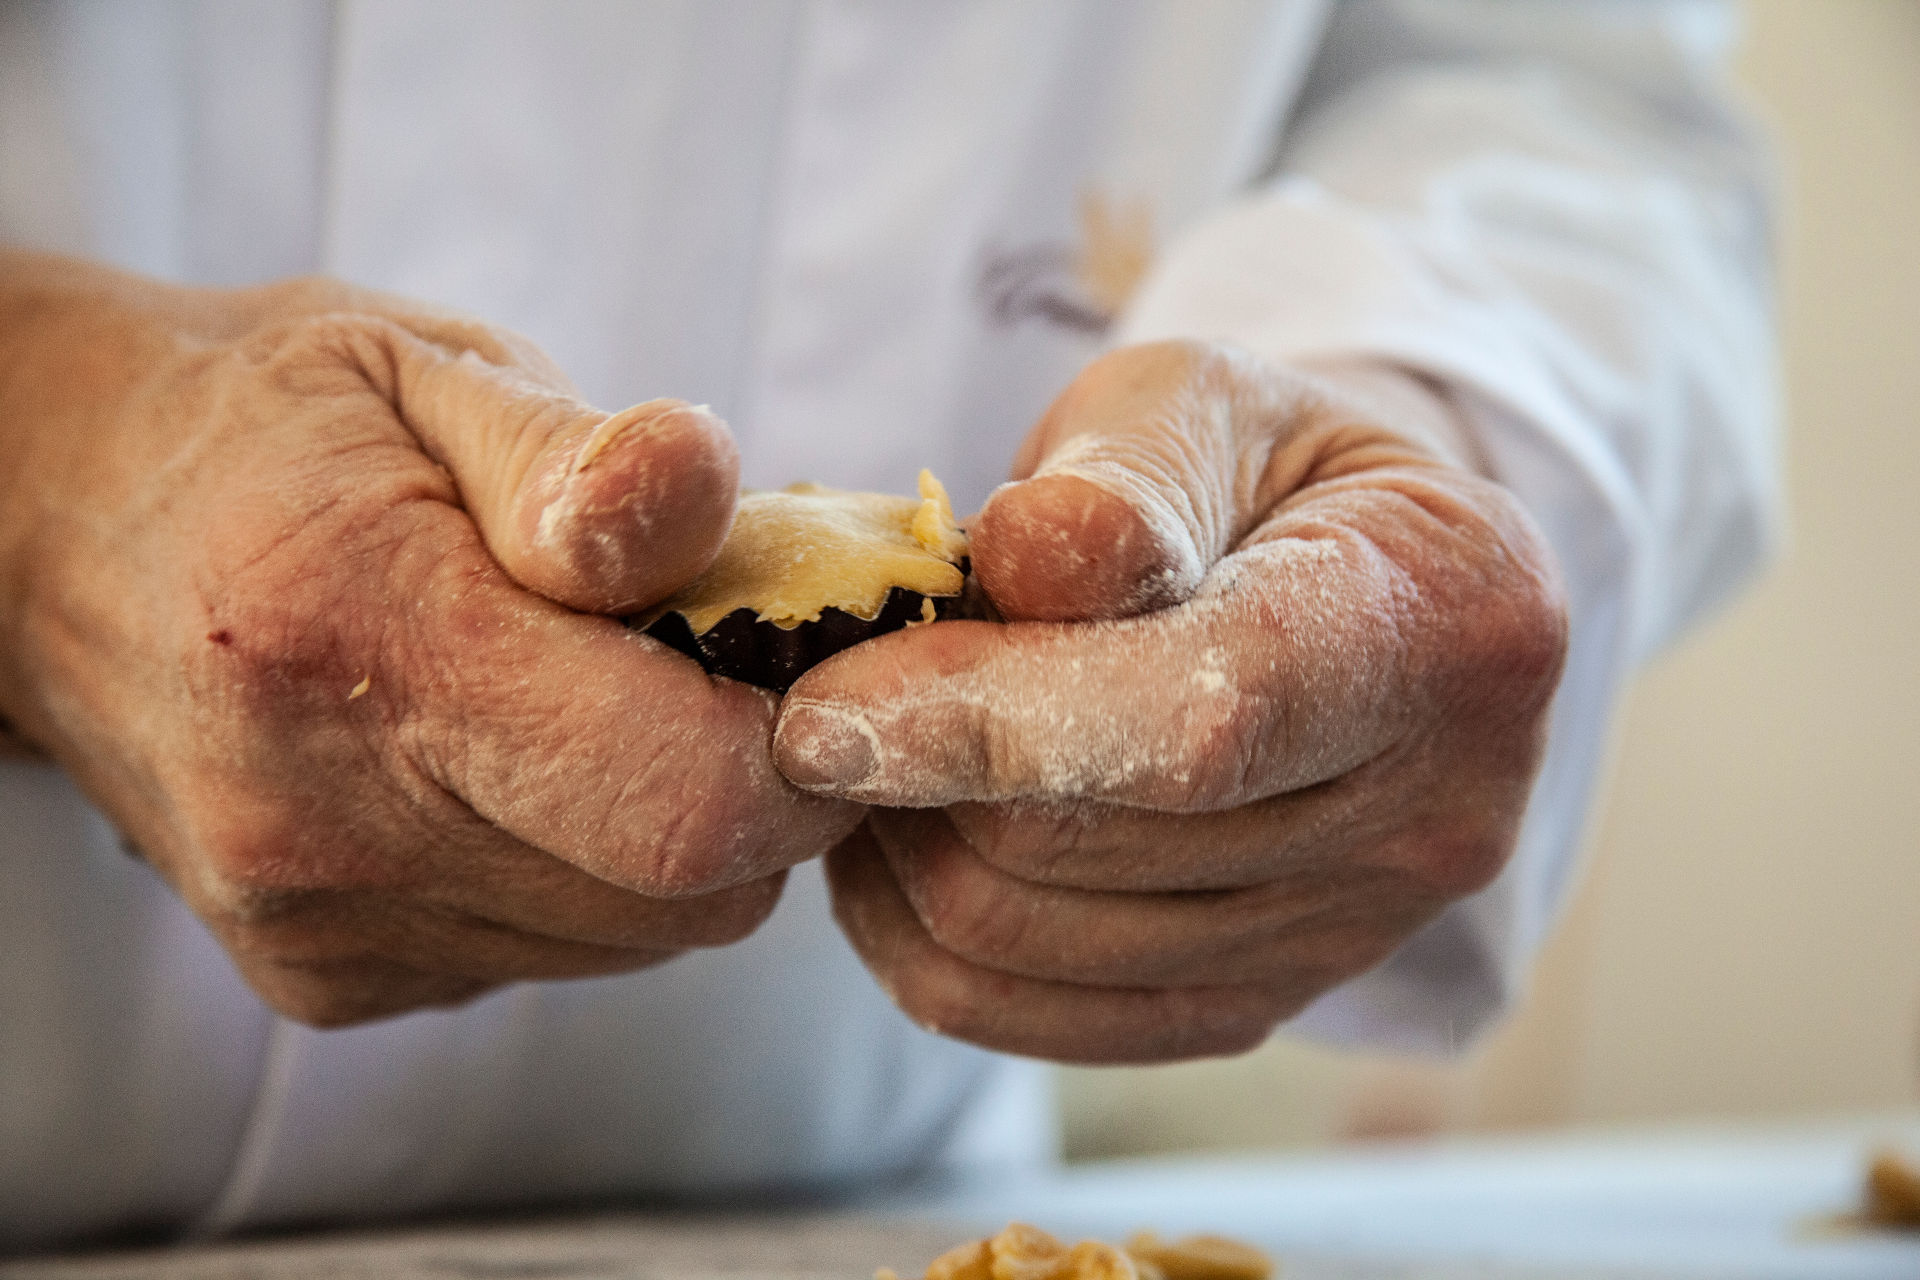 mani cuoco impastano dolci bocconotti tipici teramani del Il Granaio Antico di Teramo